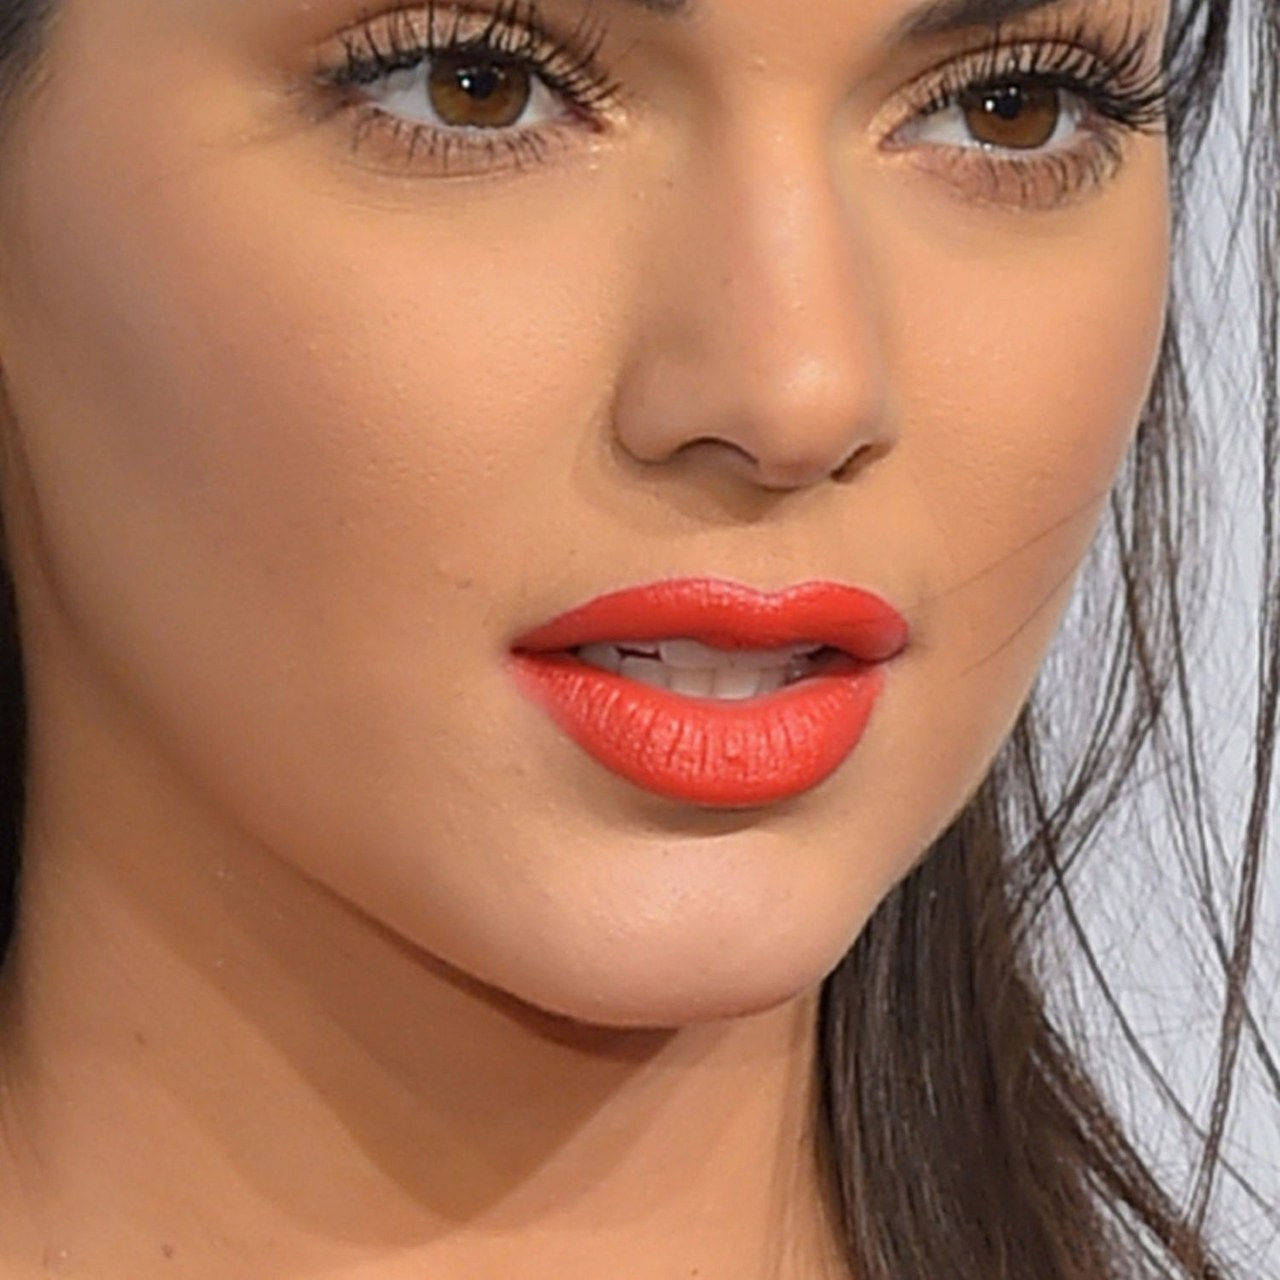 كيندال jenner overlining lips lipstick close